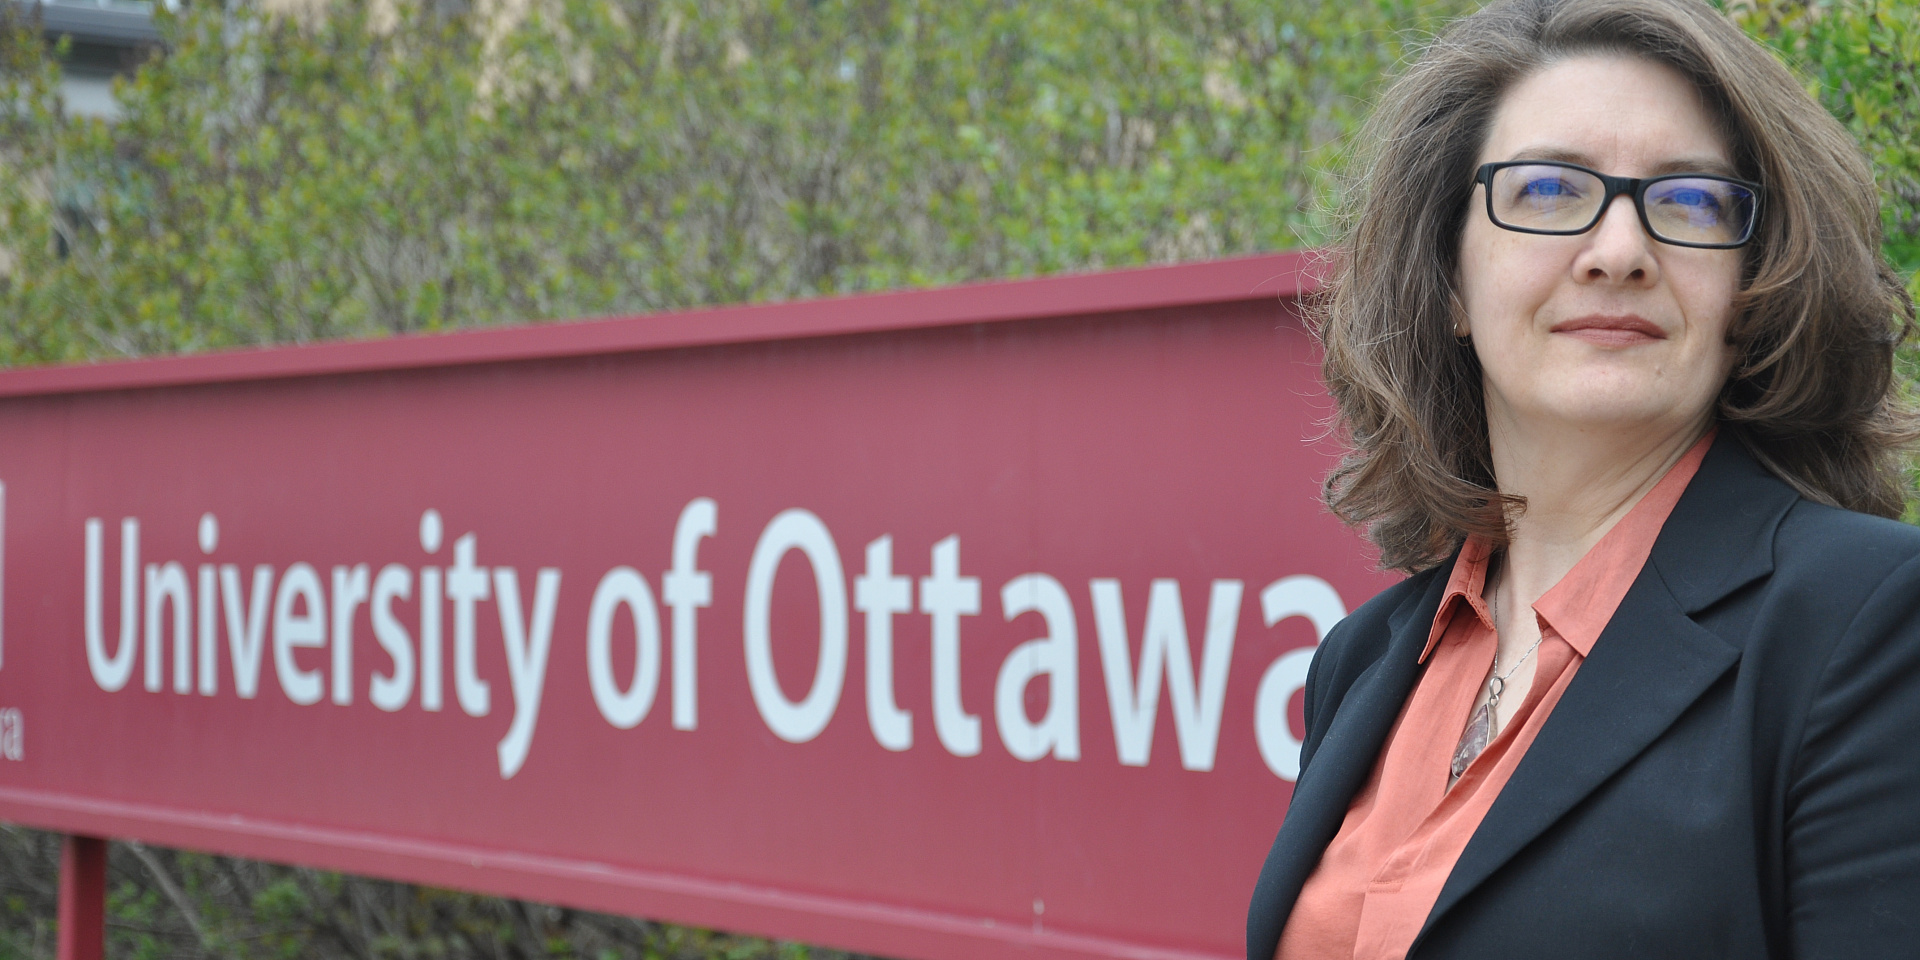 Autrice devant l’affiche de l’Université d’Ottawa